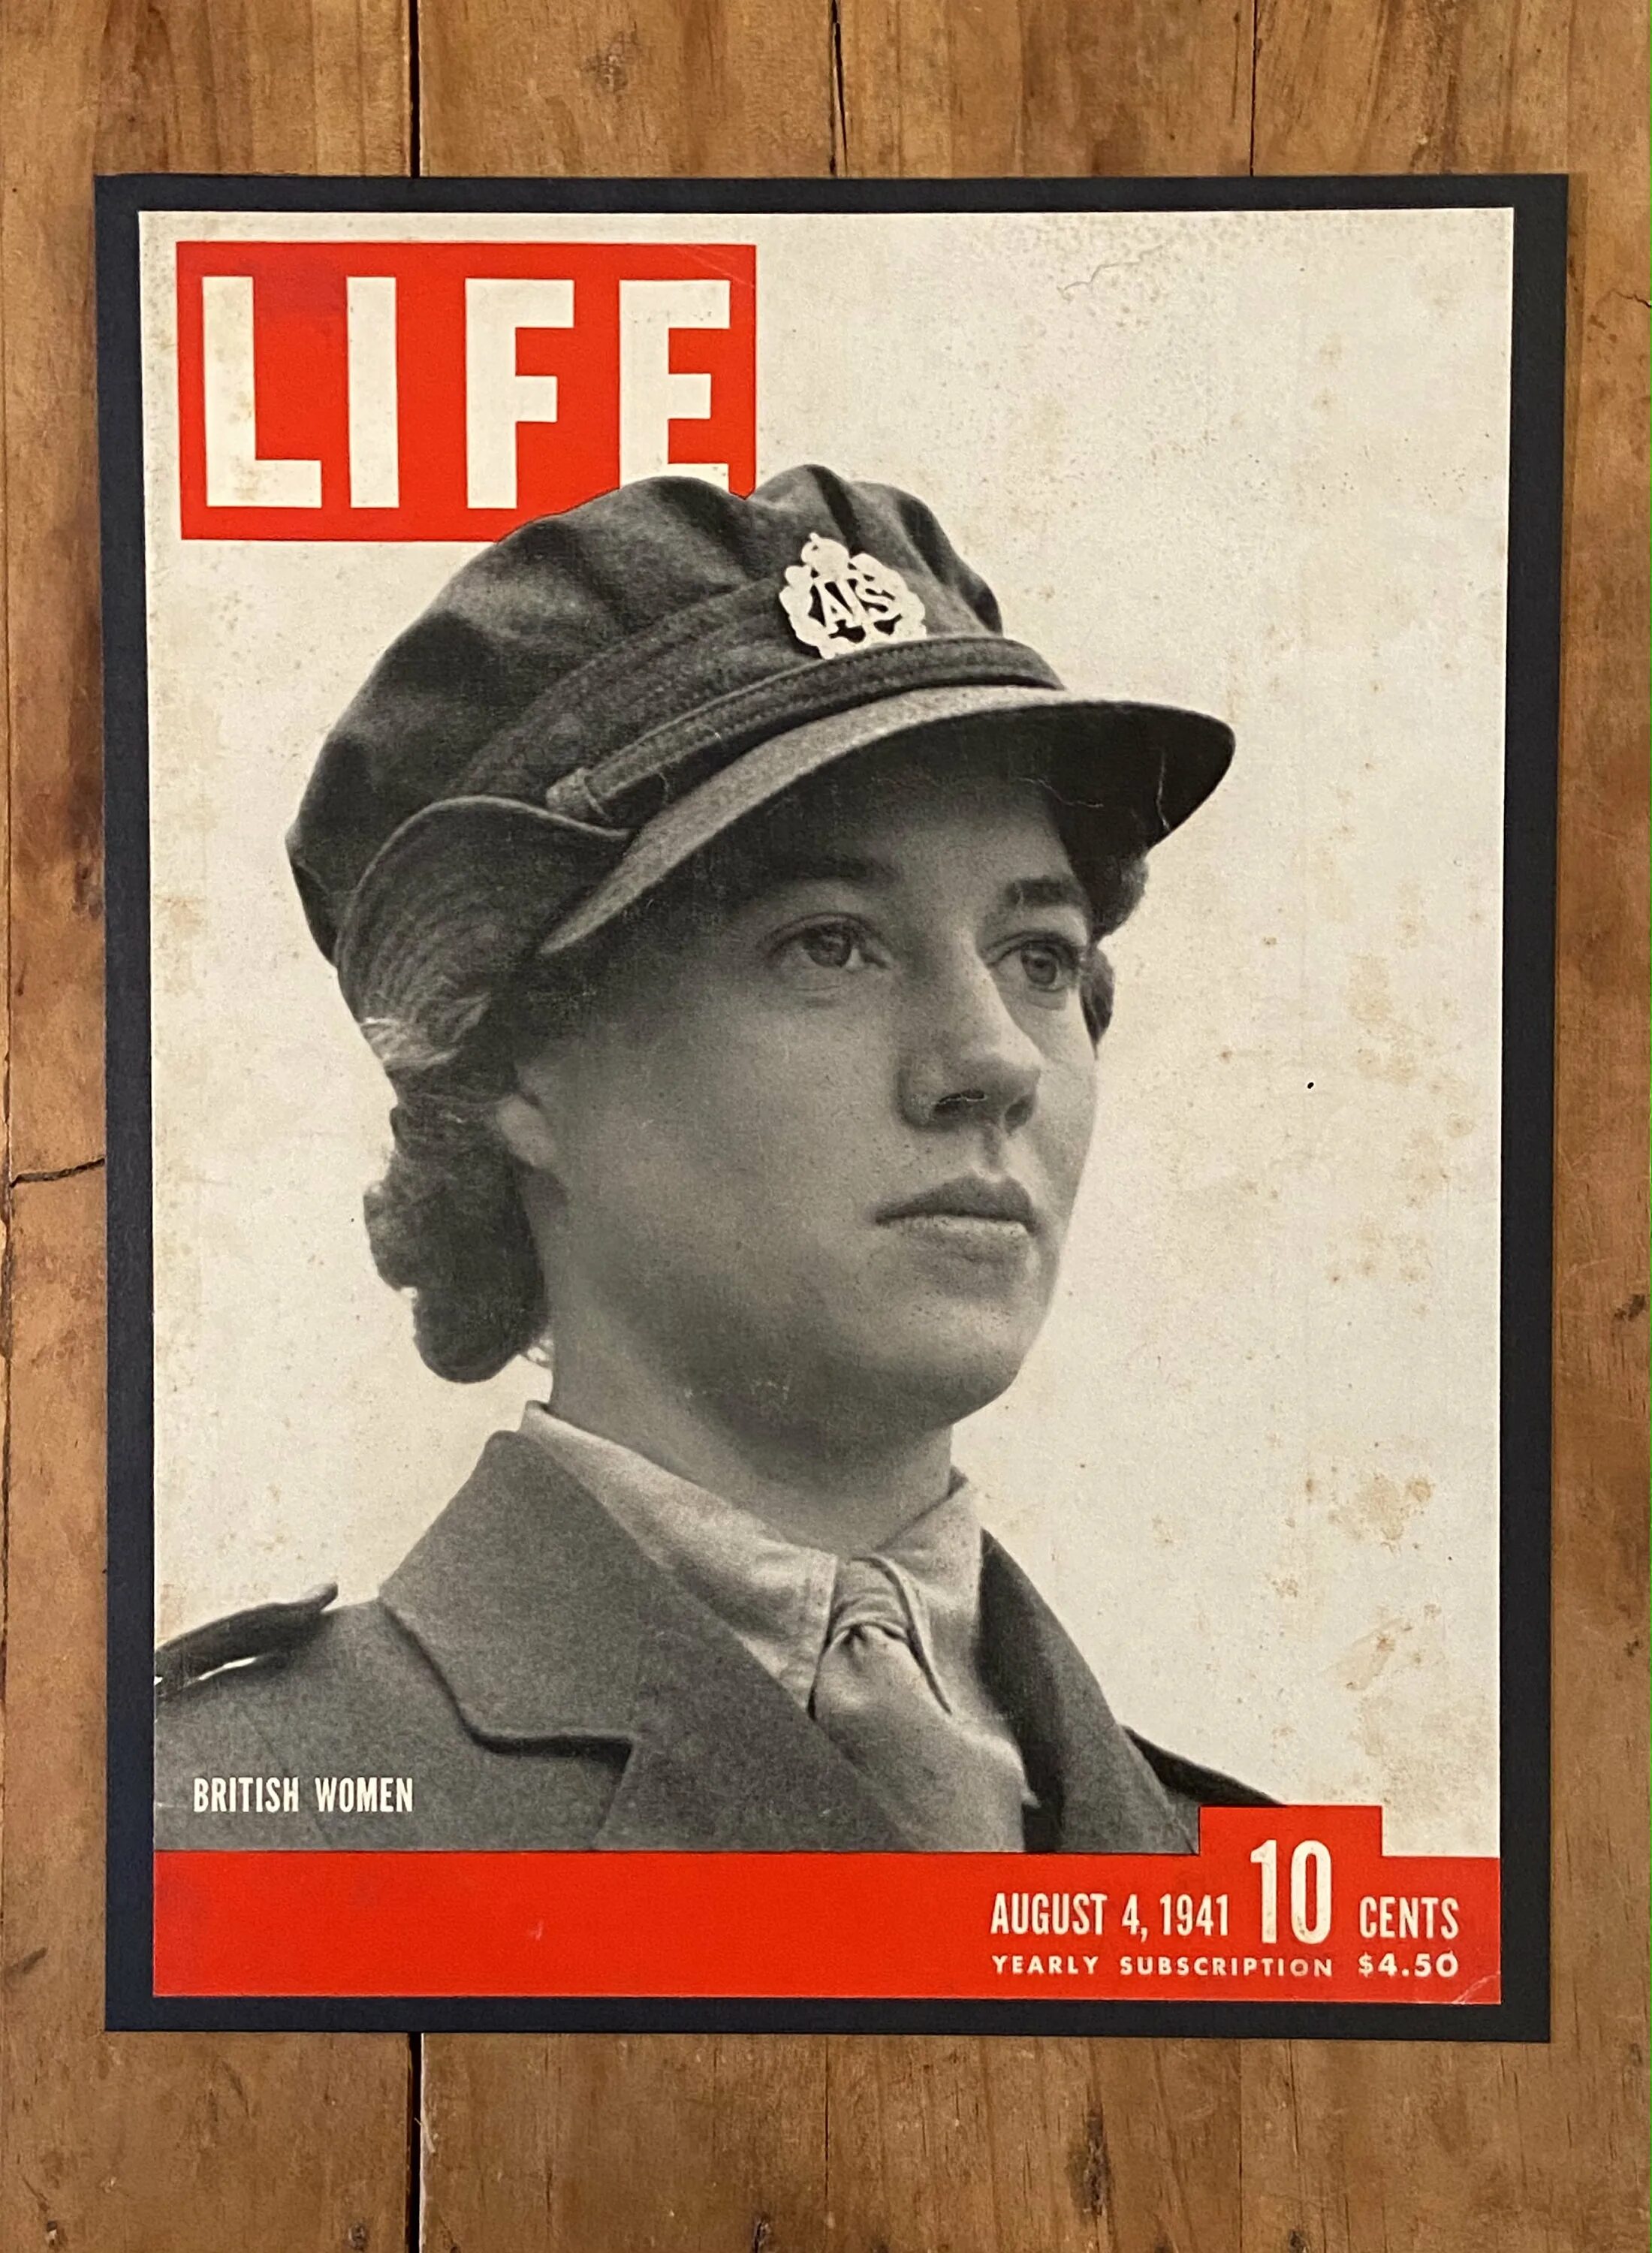 Журнал лайф. Обложка журнала Life 1941. Журнал лайф 1941 год. Обложка журнала Soldier. Life magazine